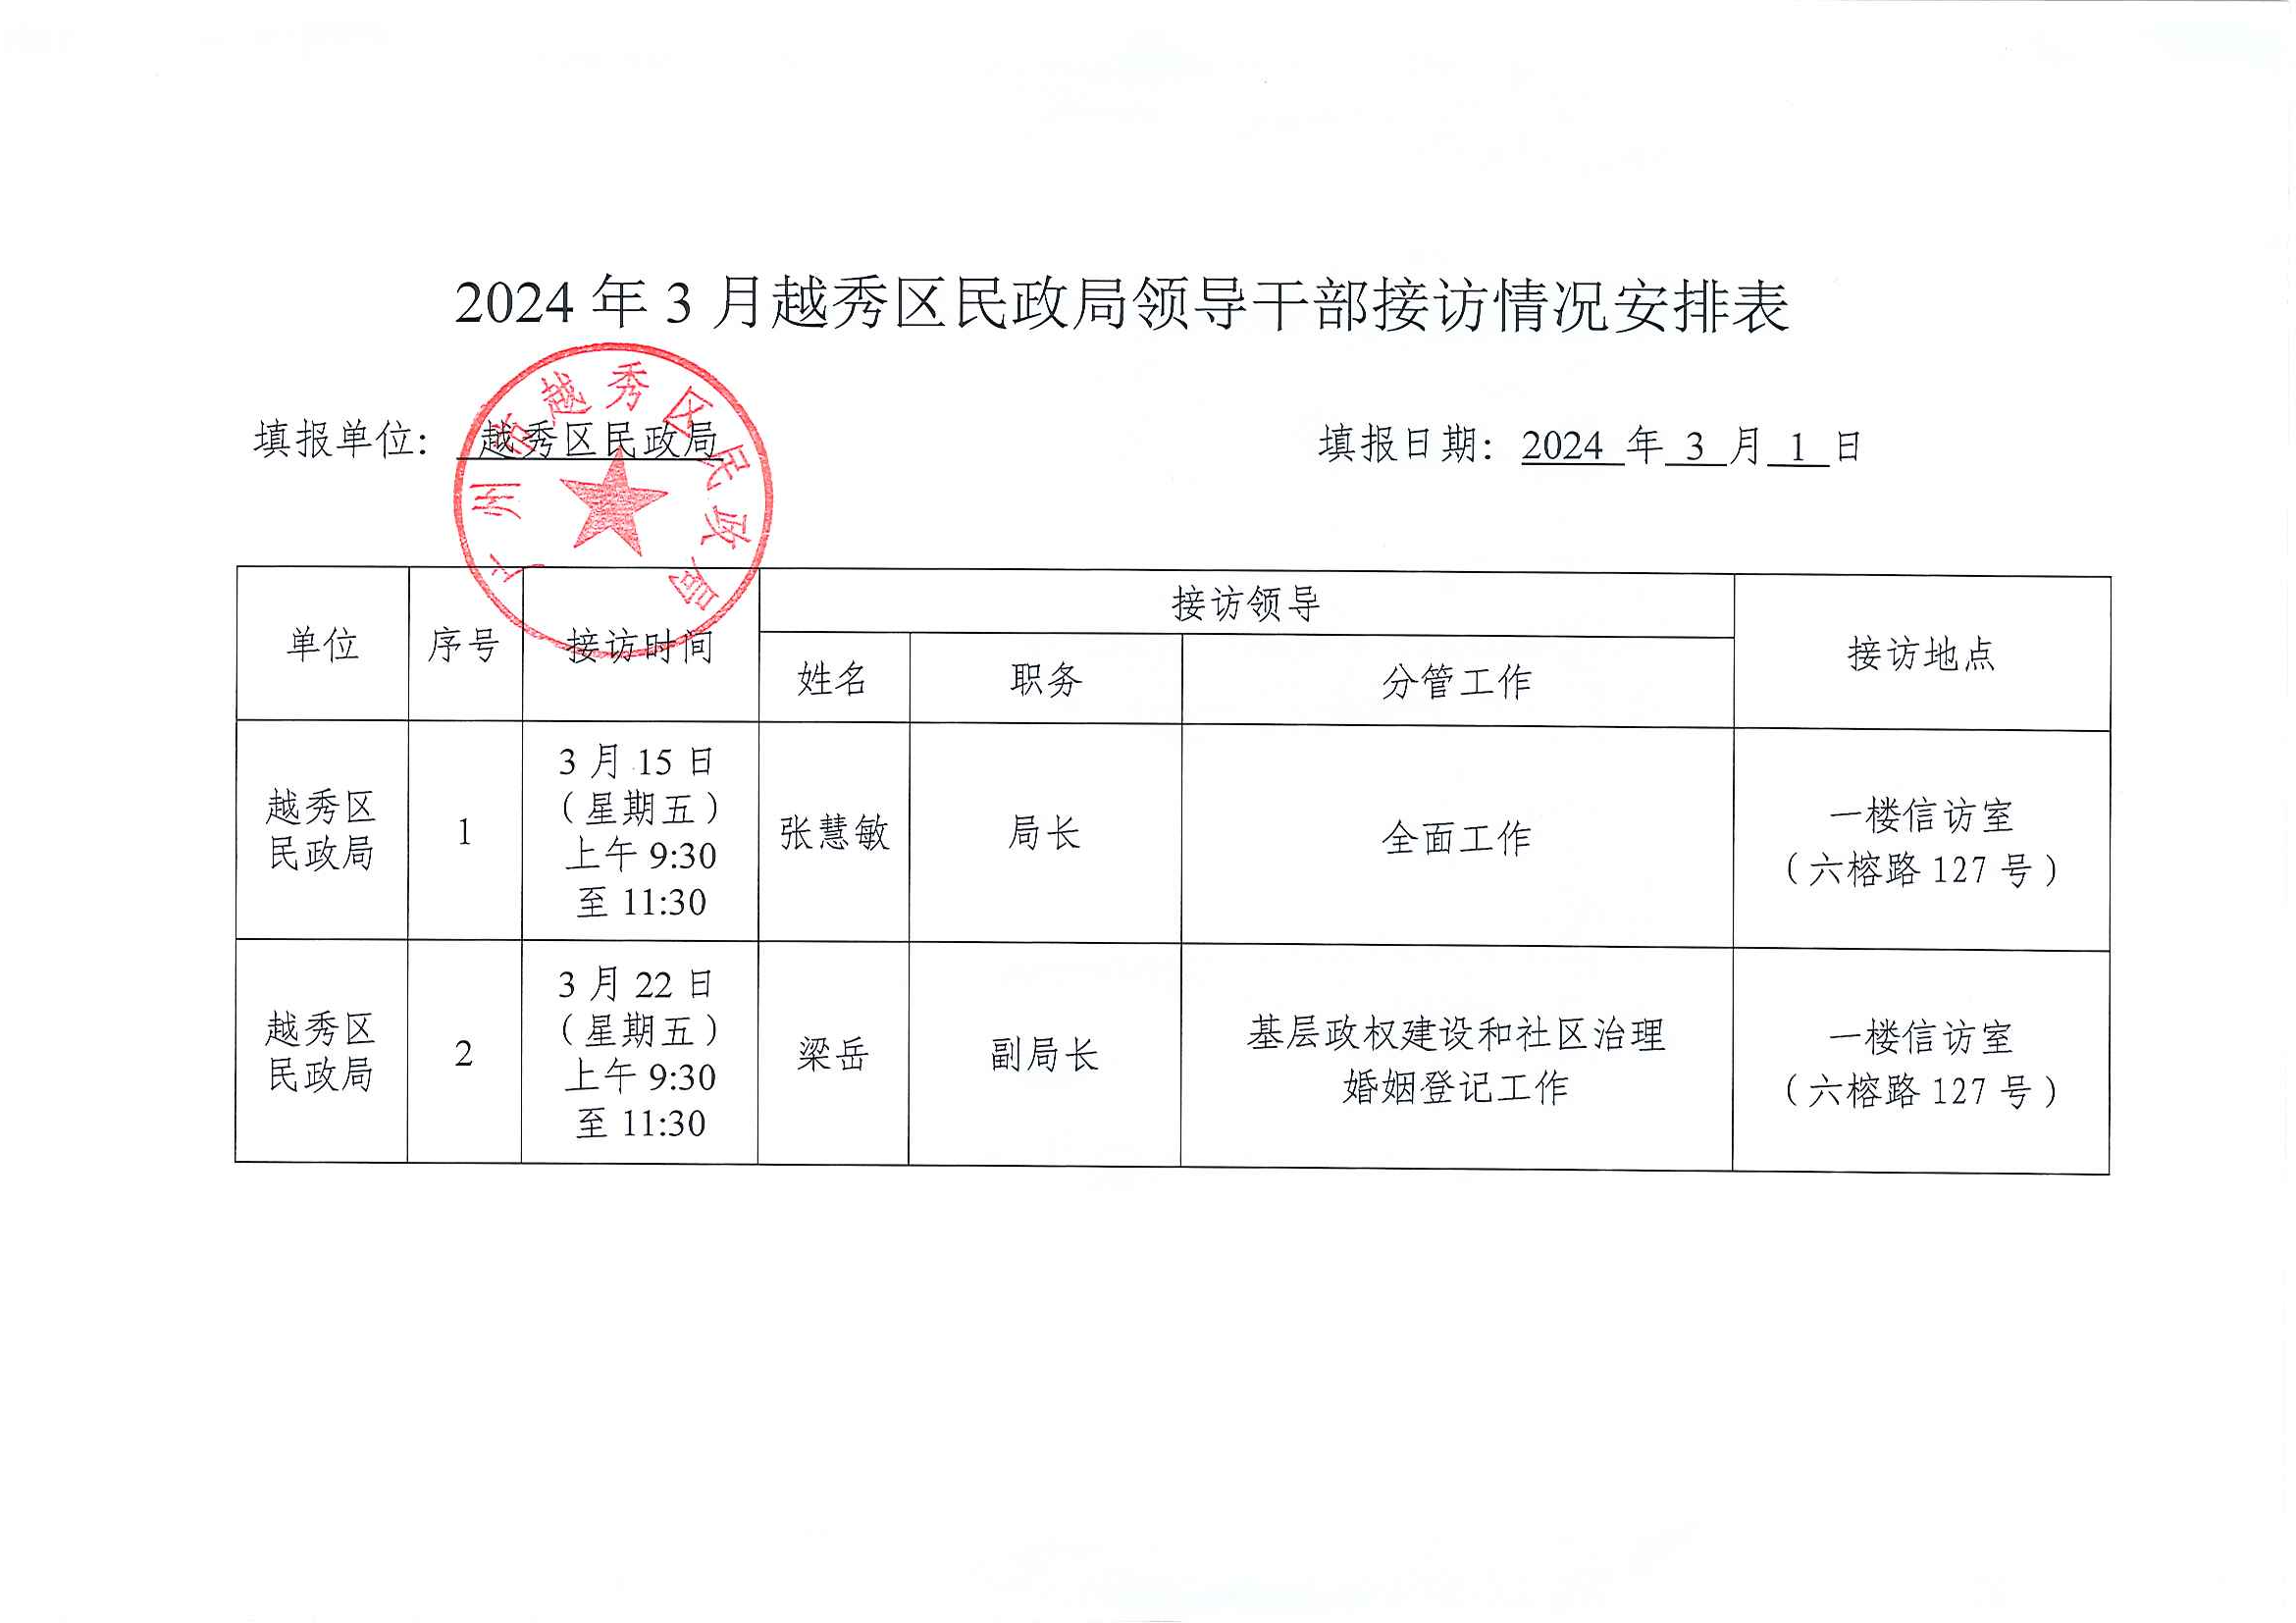 2024年3月越秀区民政局领导干部接访情况安排表.jpg